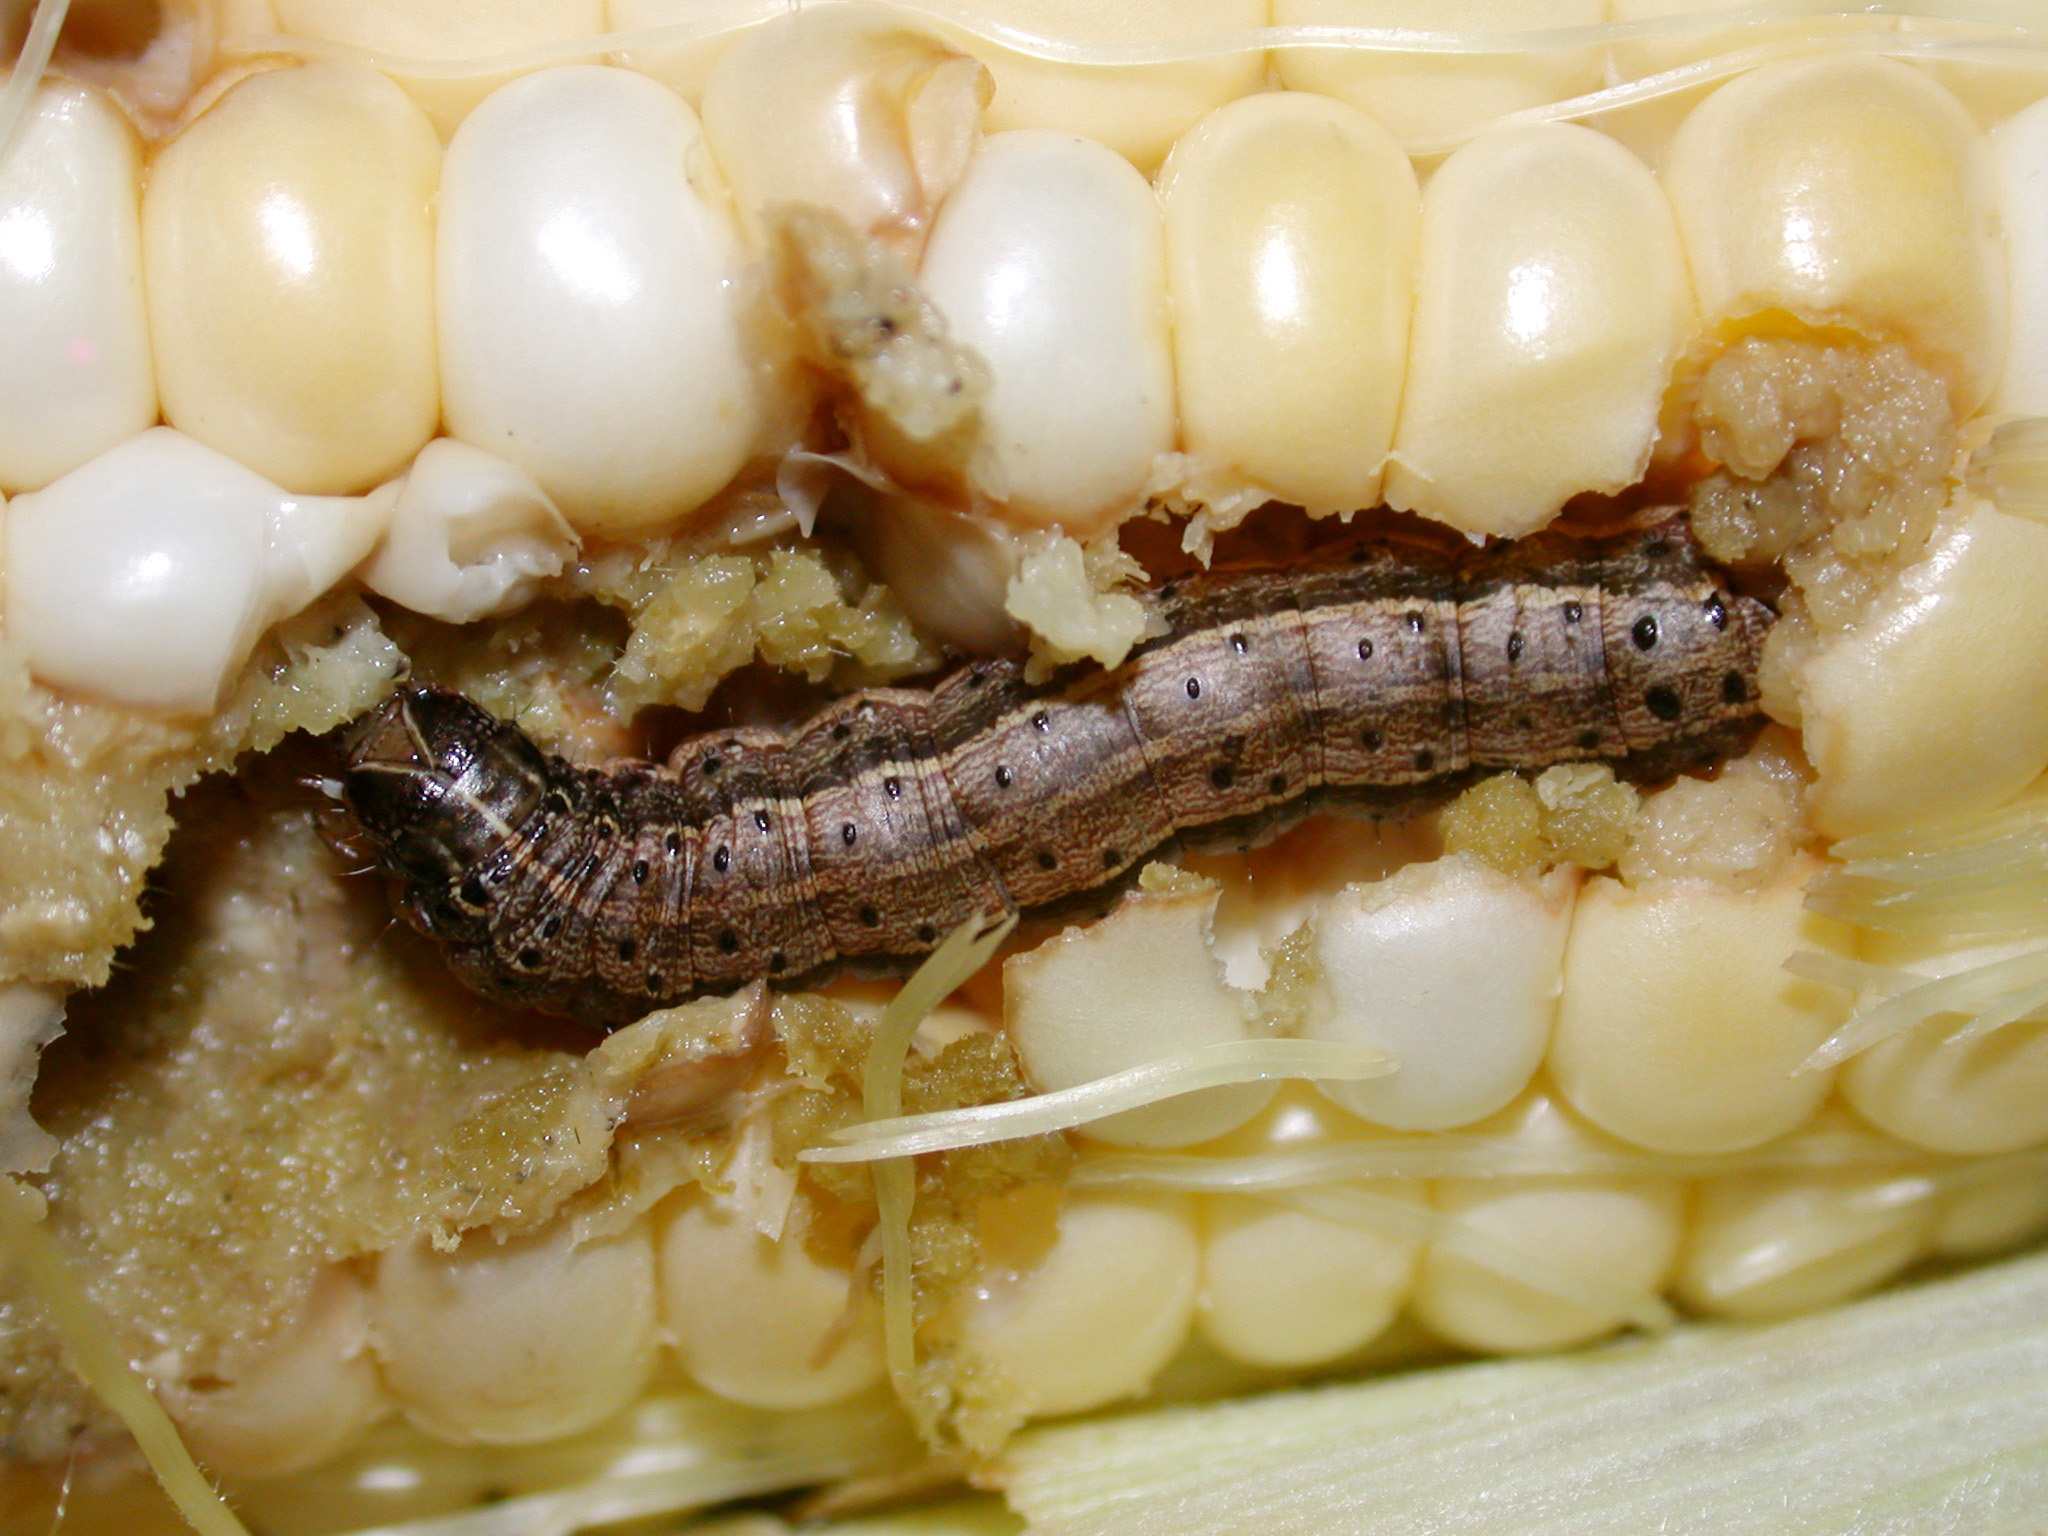 Fall armyworm feeding on kernels.